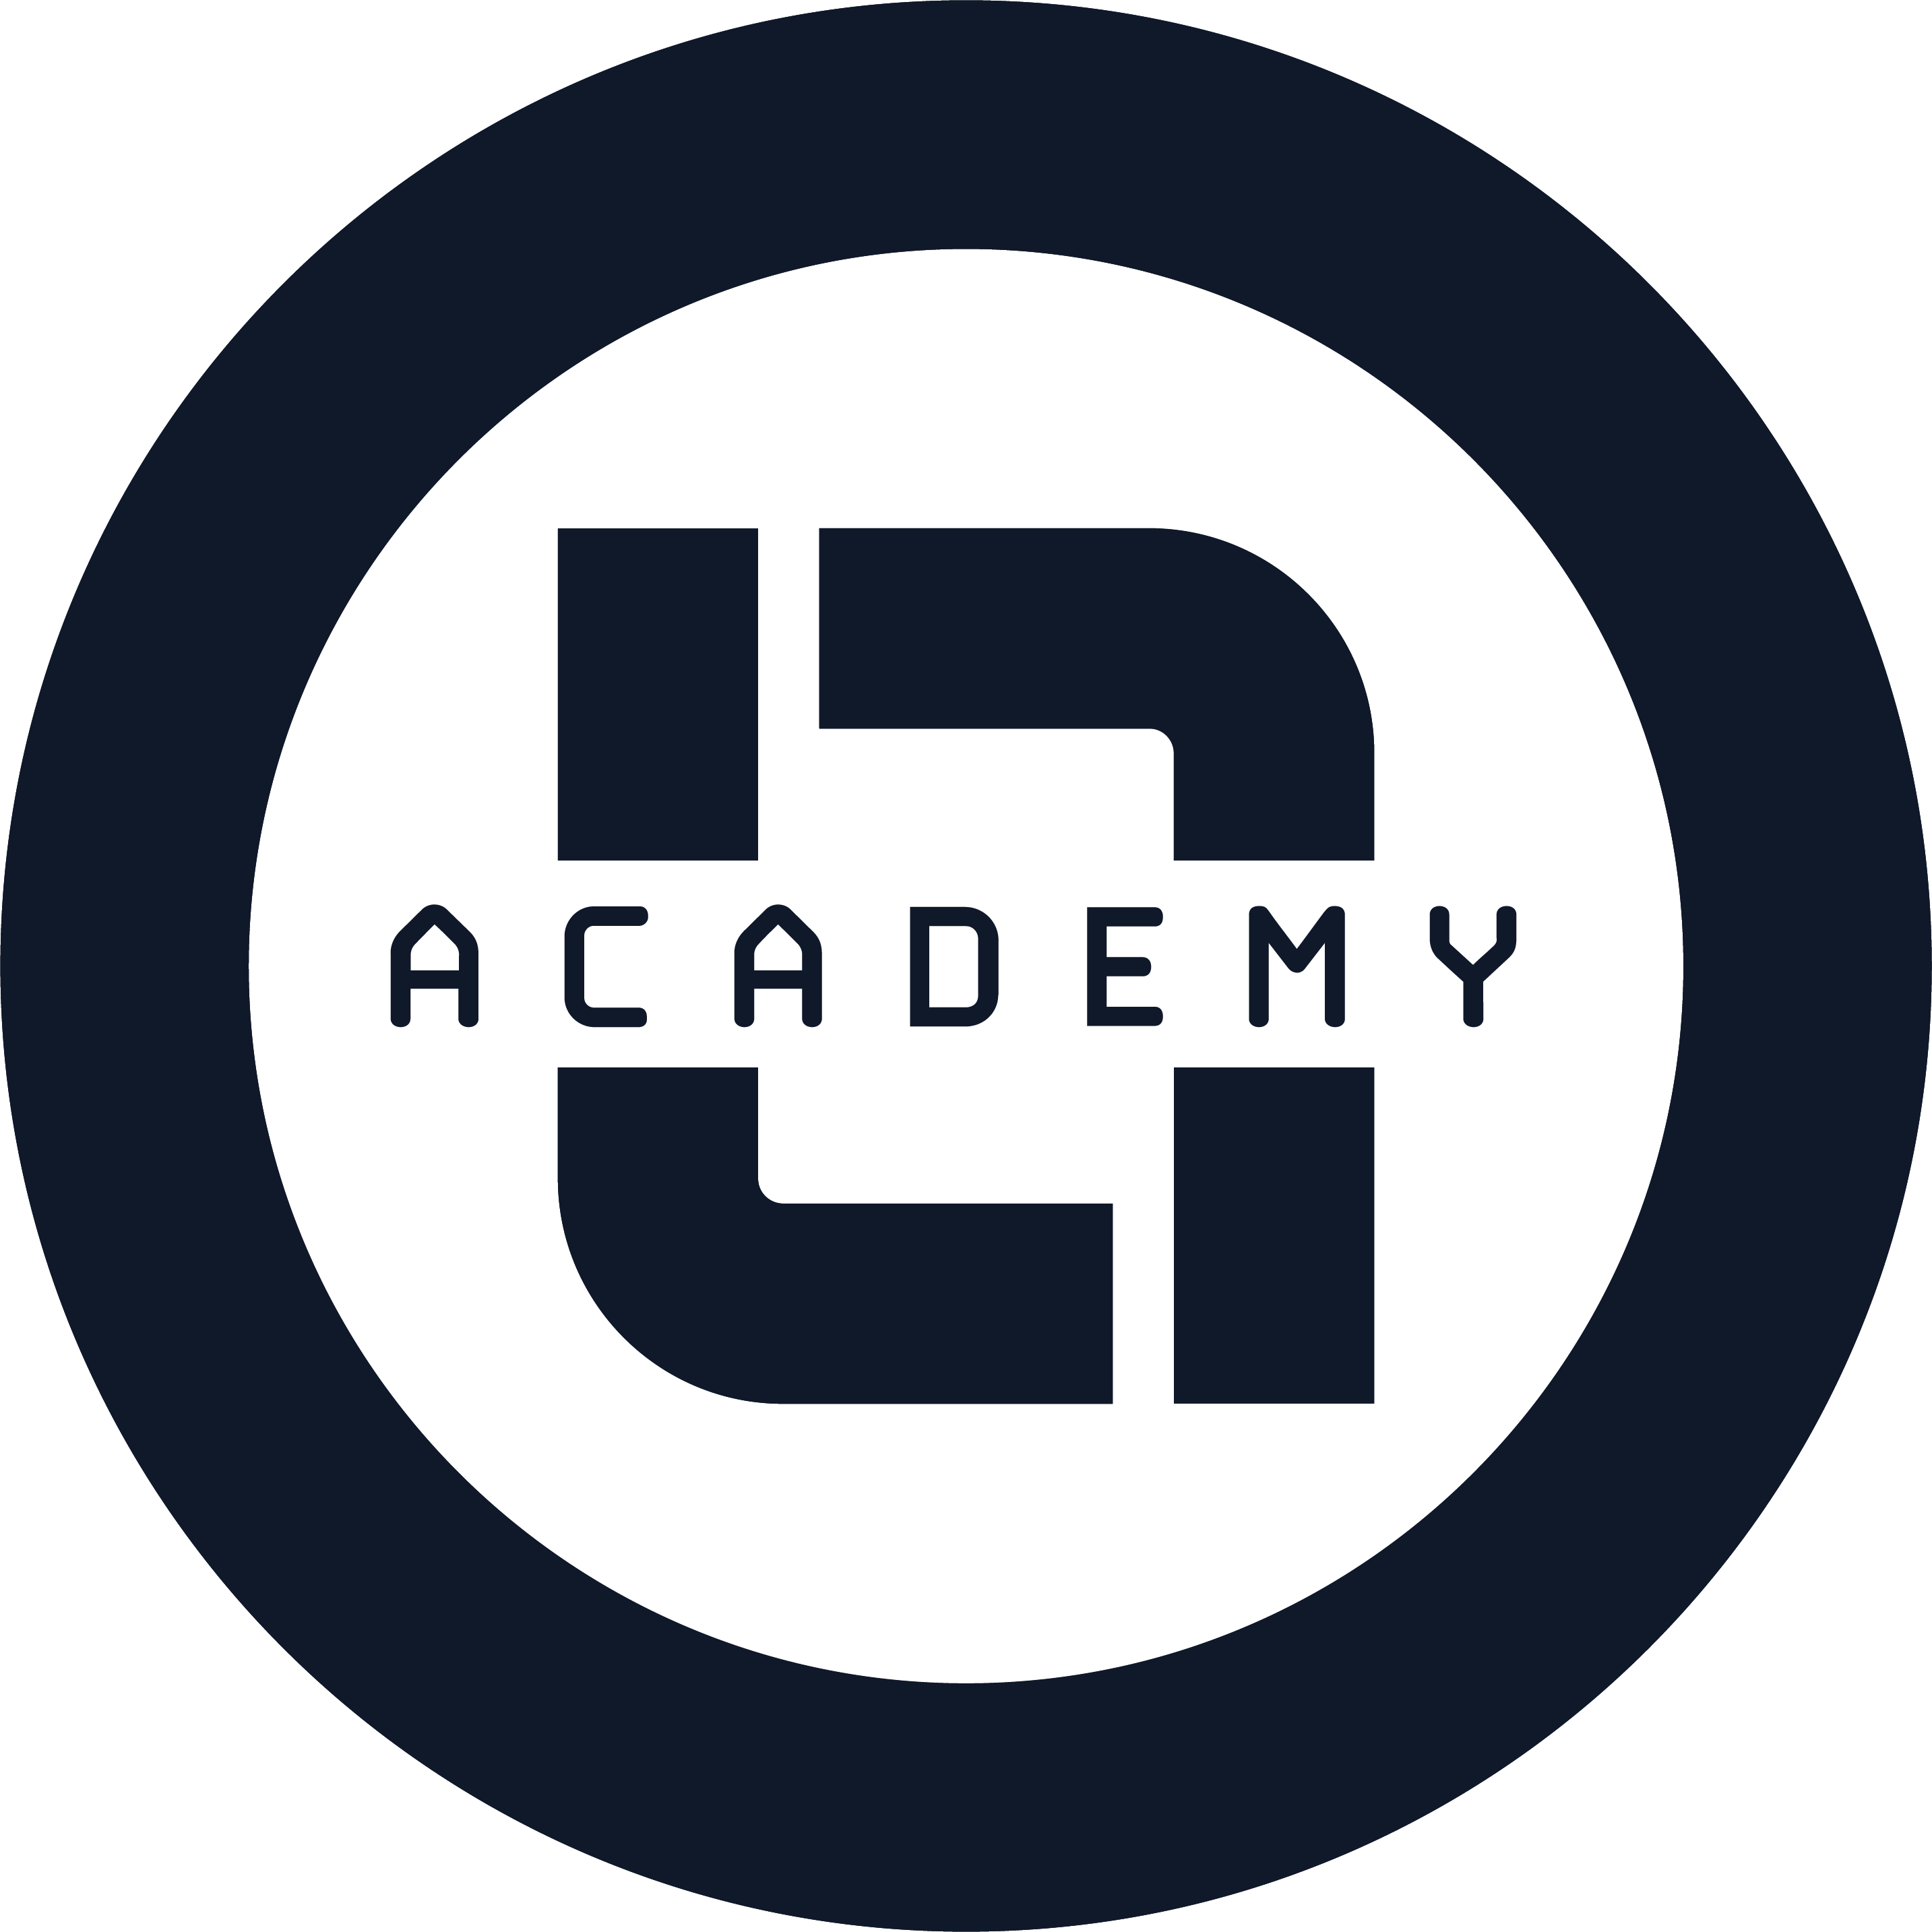 Level 7 Academy